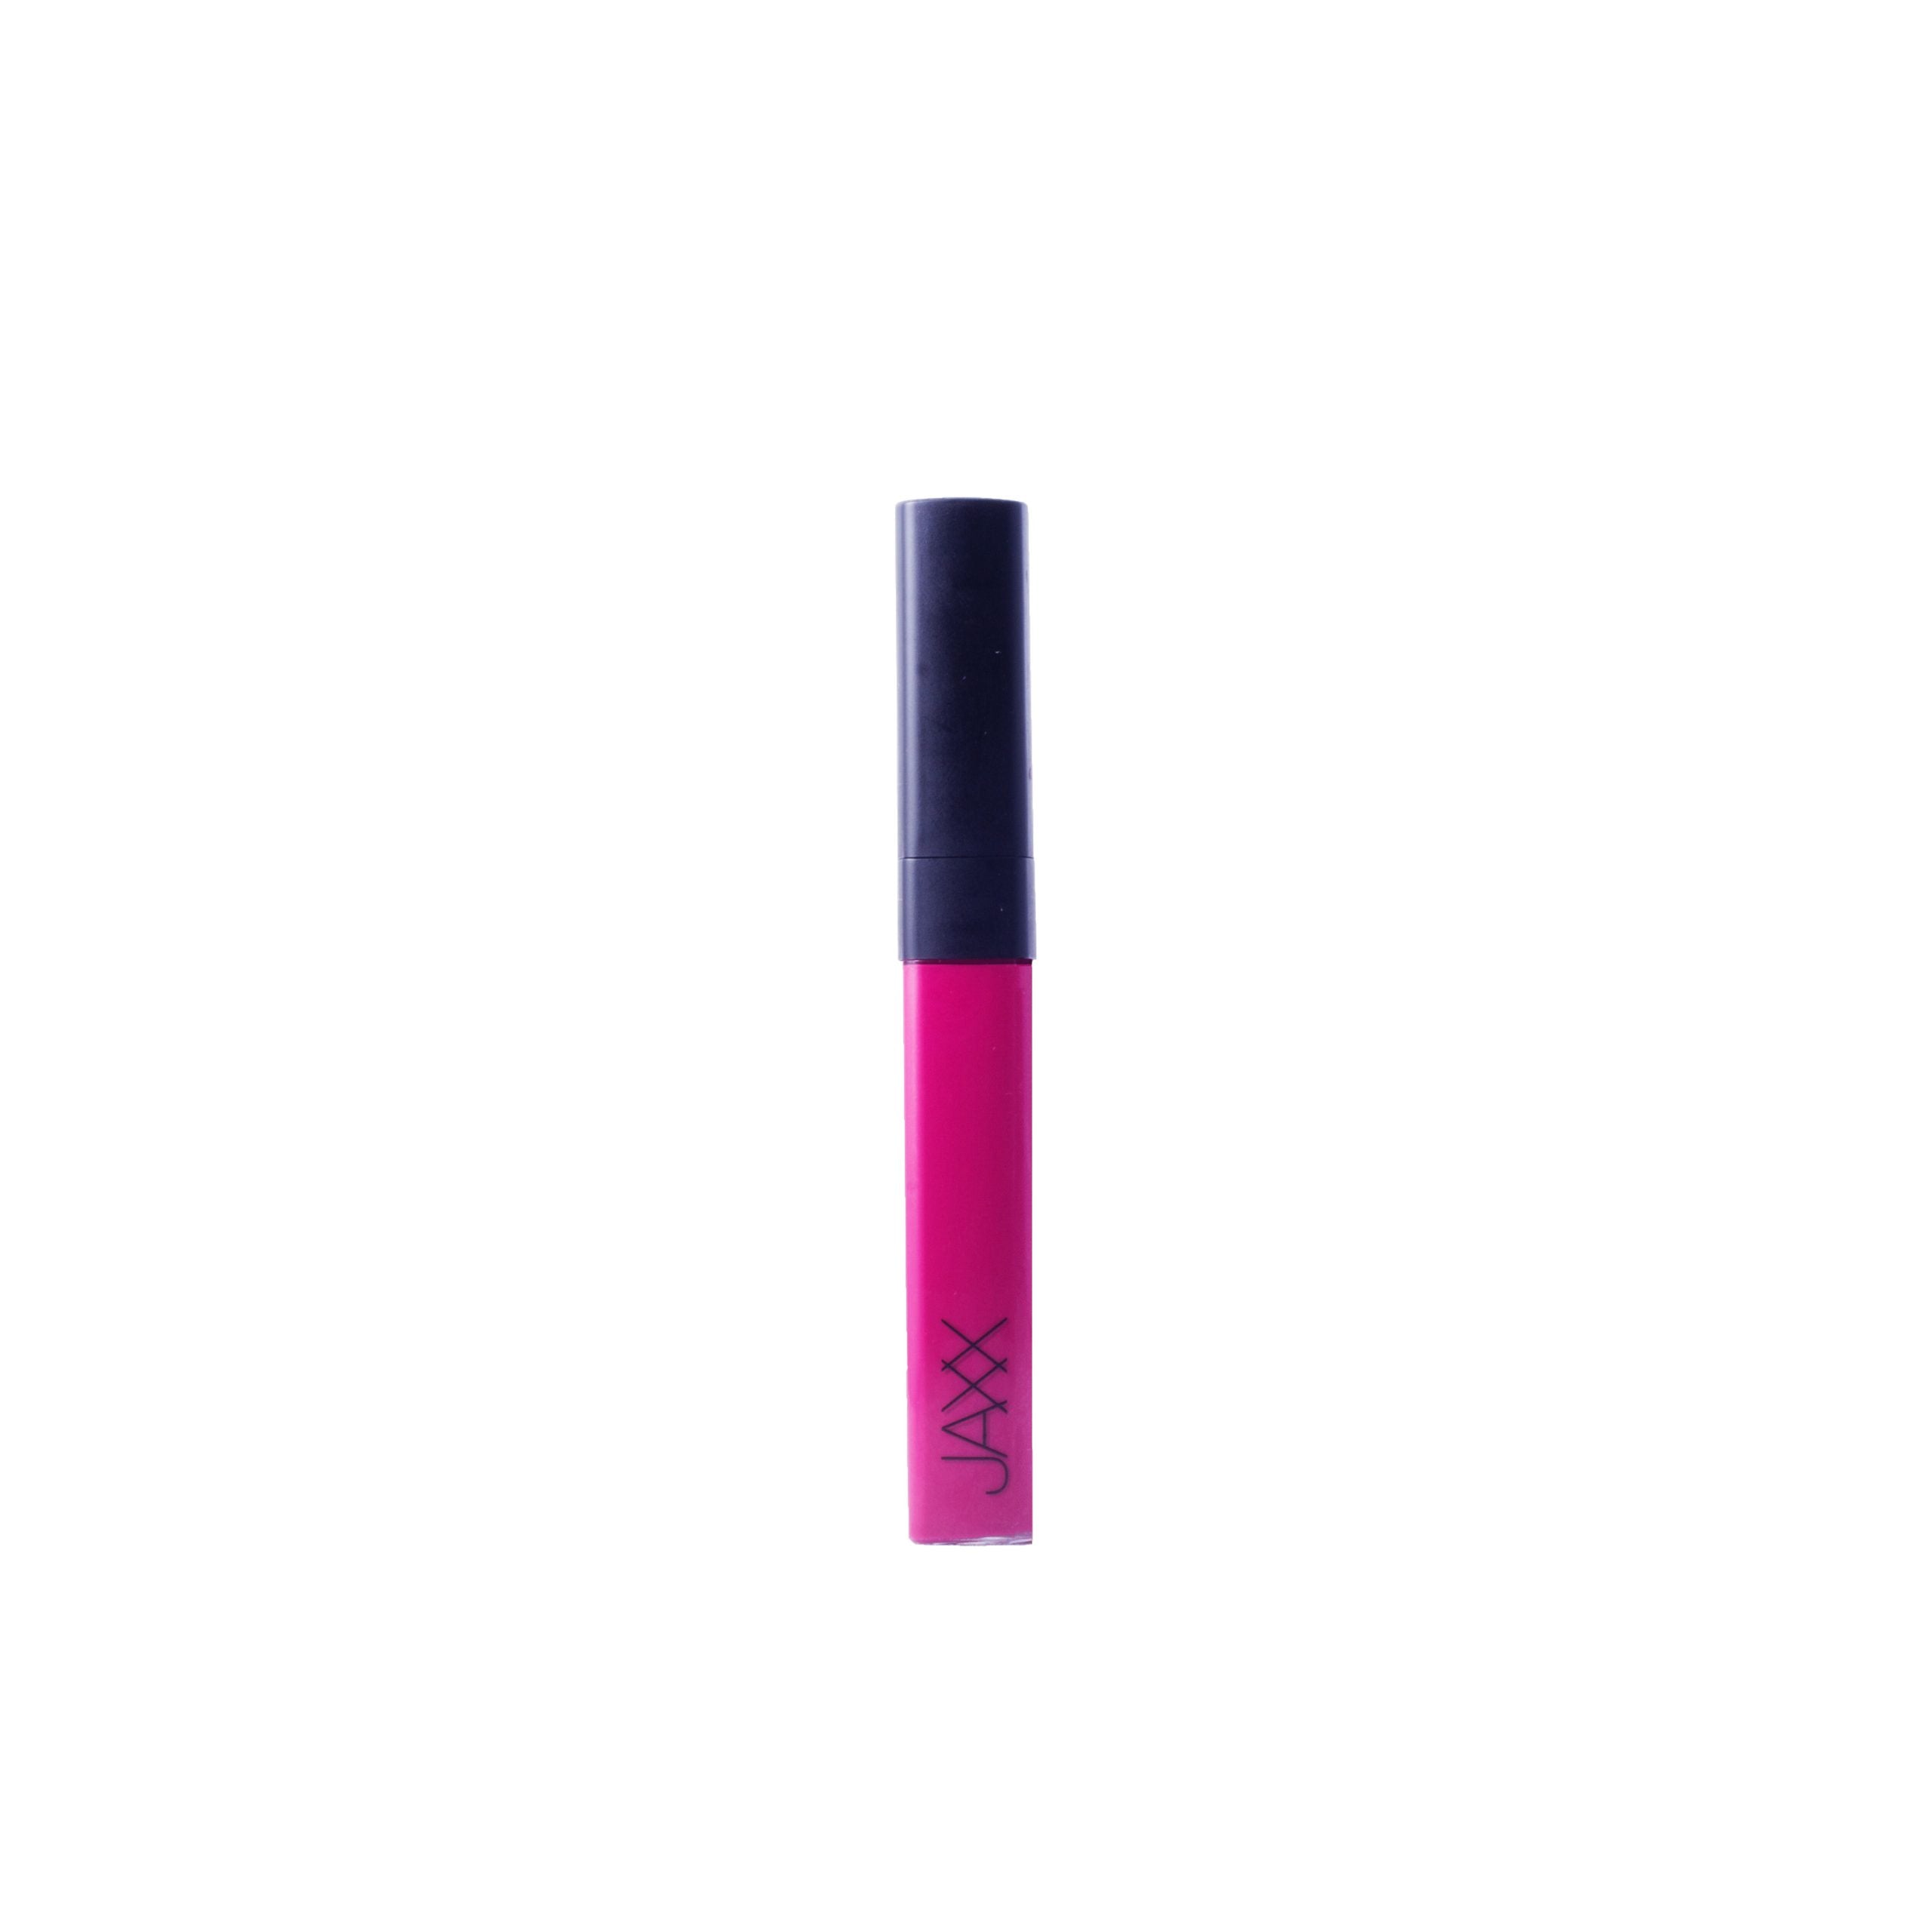 JAXX Cosmetics Matte Lipstick - Latoya Rose